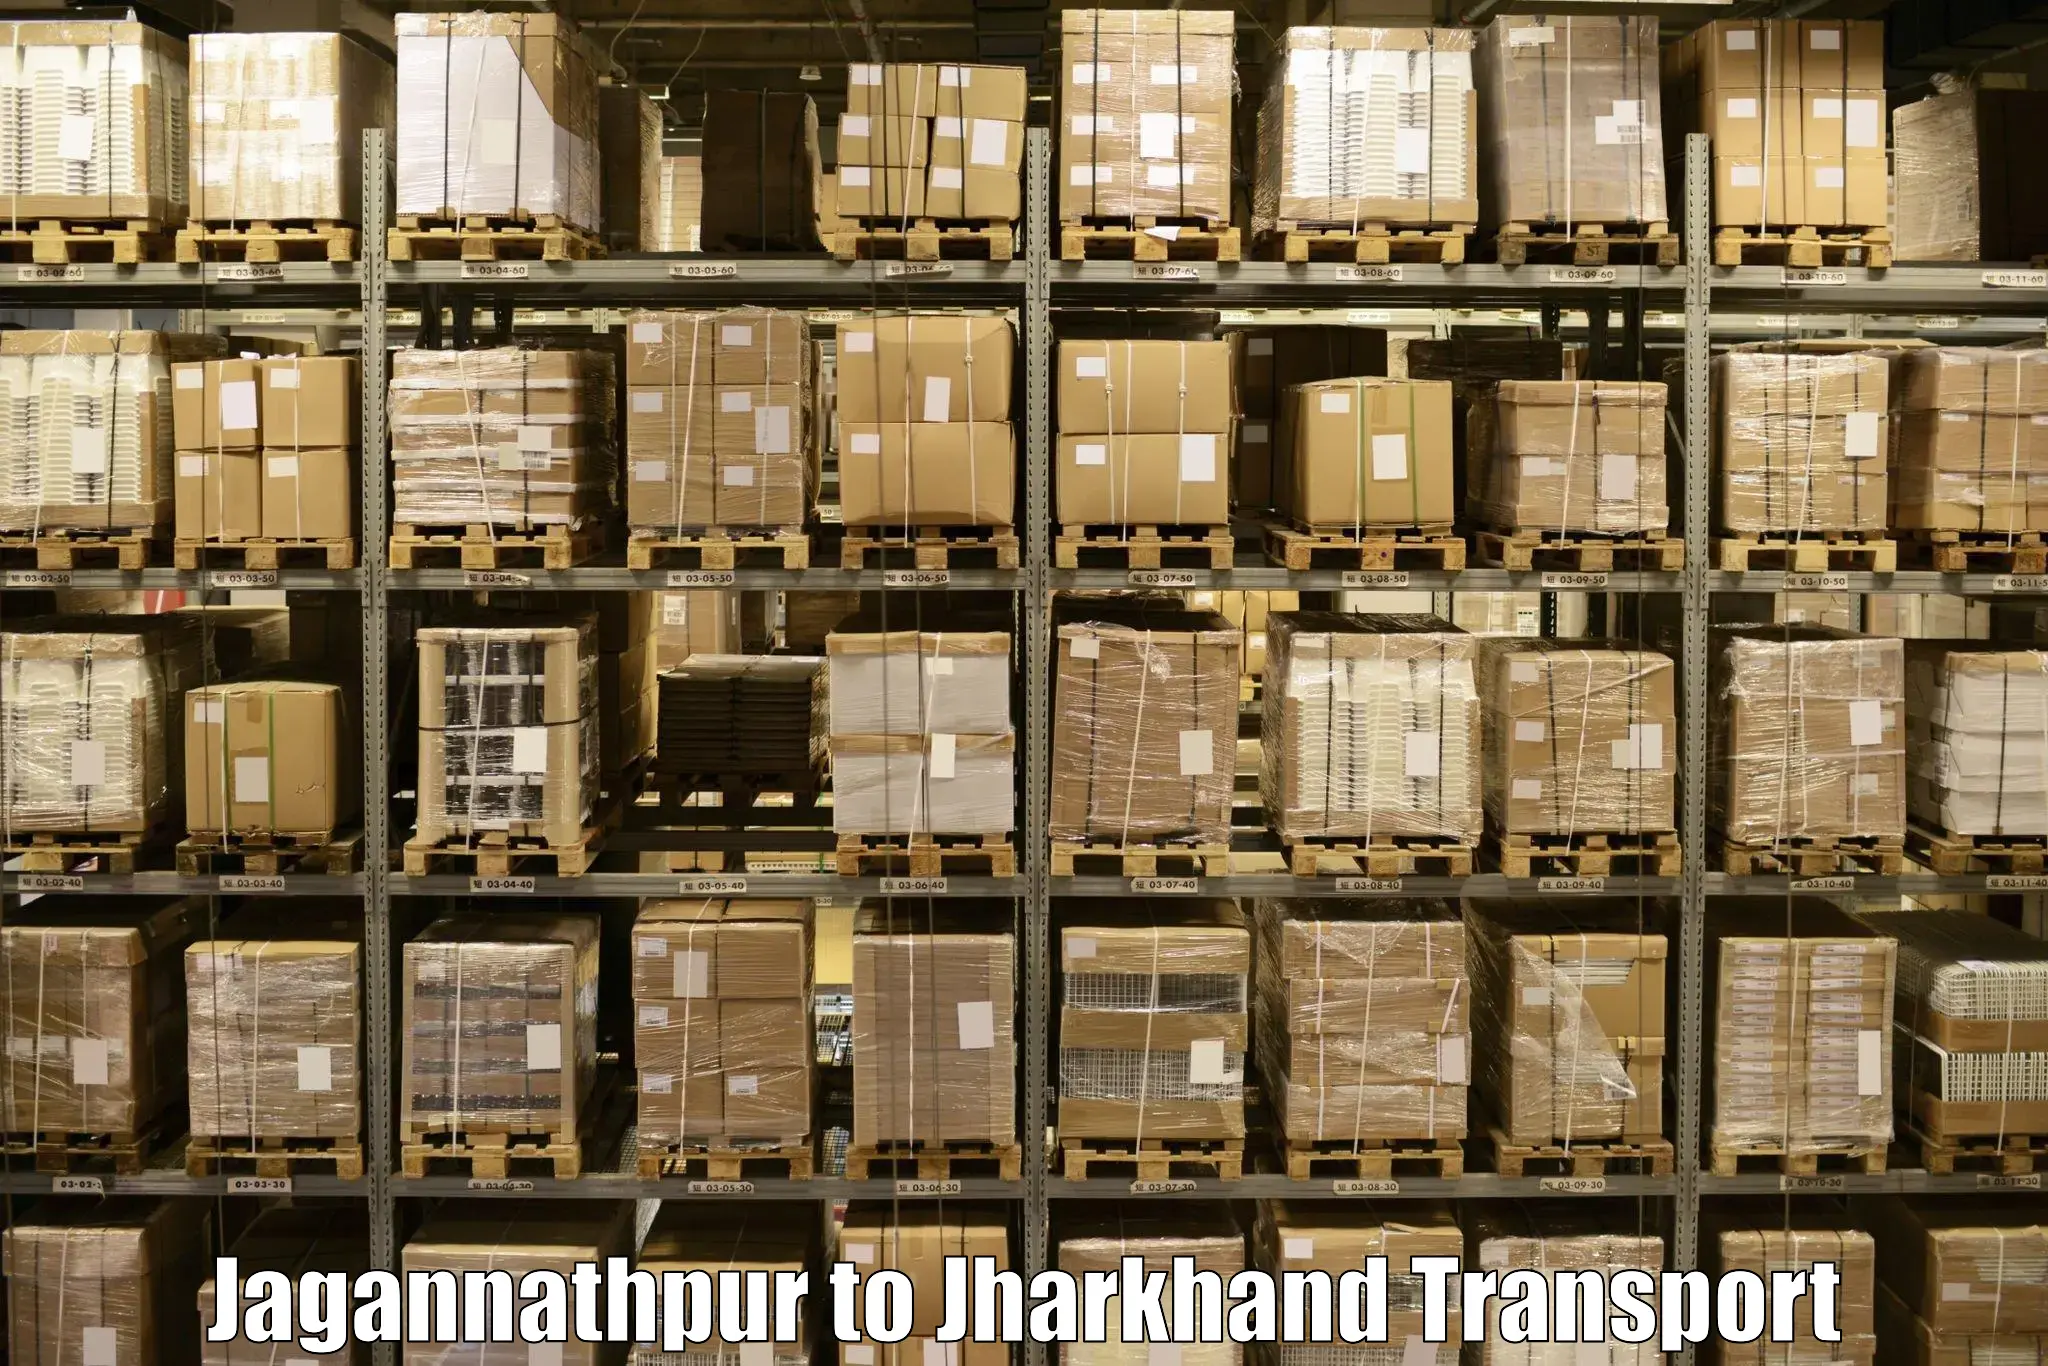 Cargo transport services Jagannathpur to Shikaripara